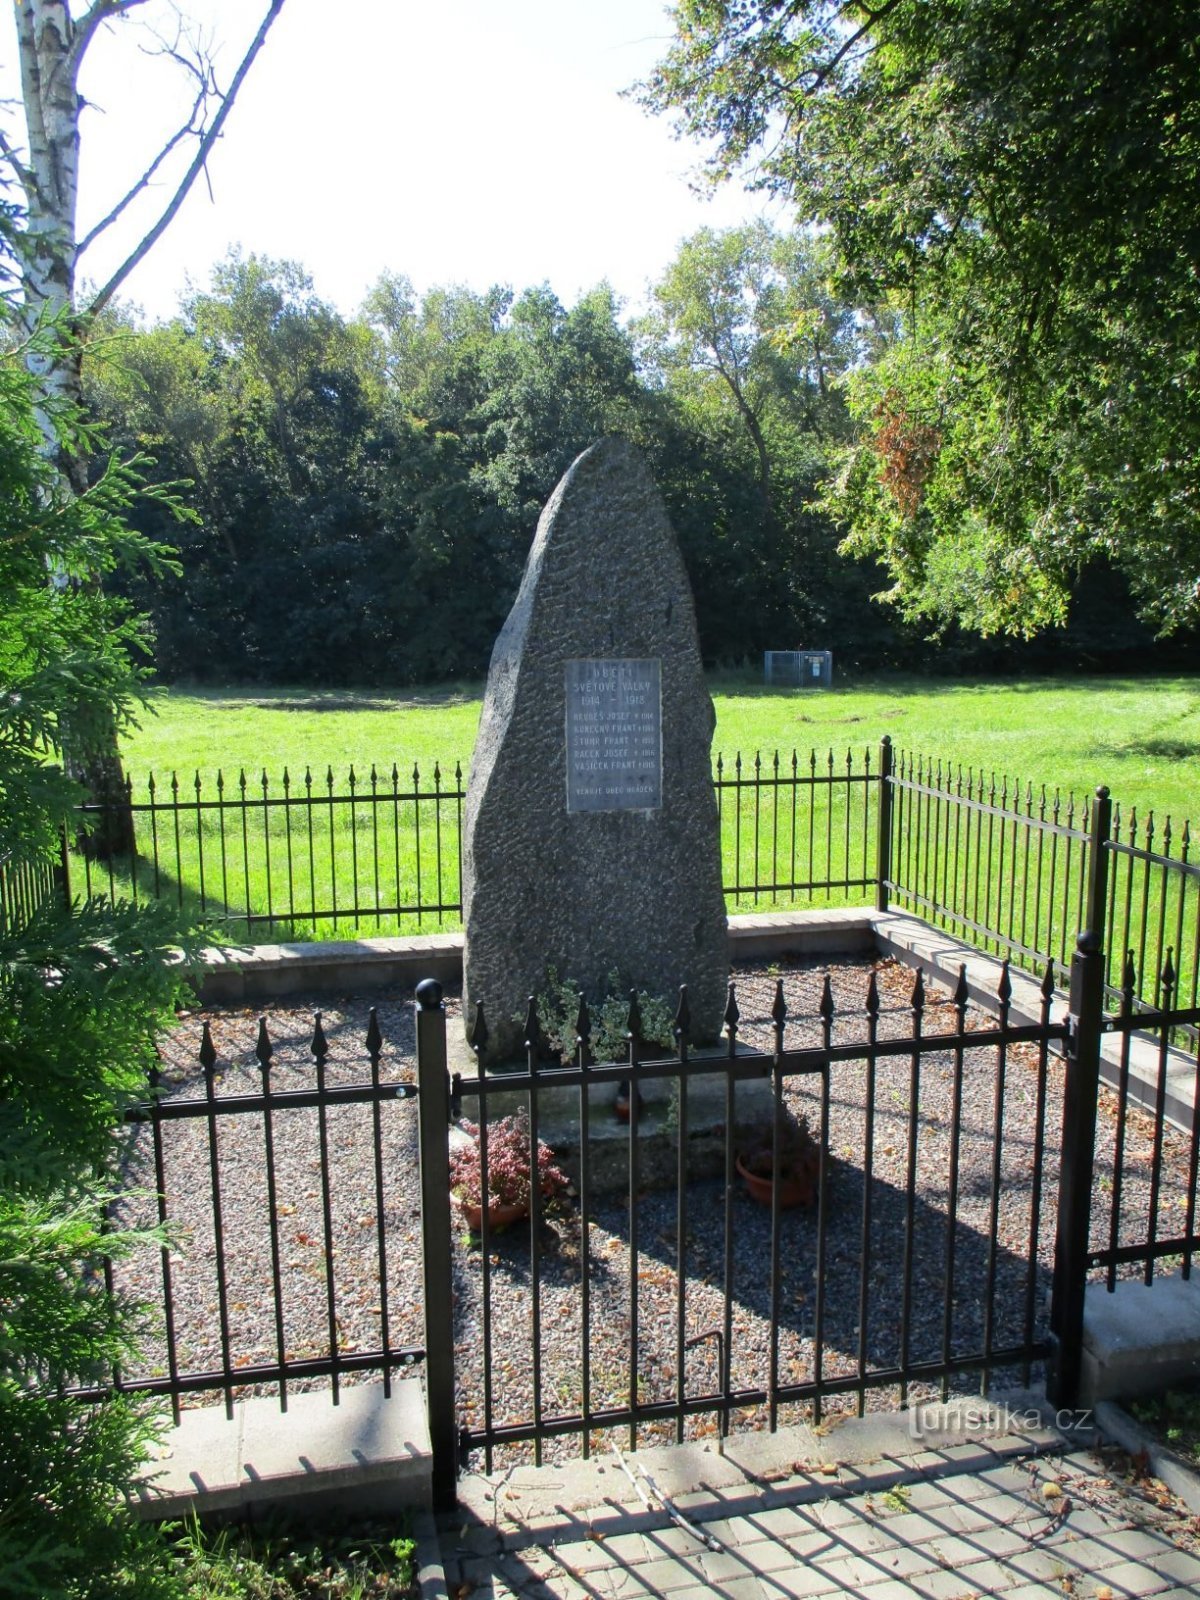 Monumentul celor căzuți (Hrádek, 9.9.2020)